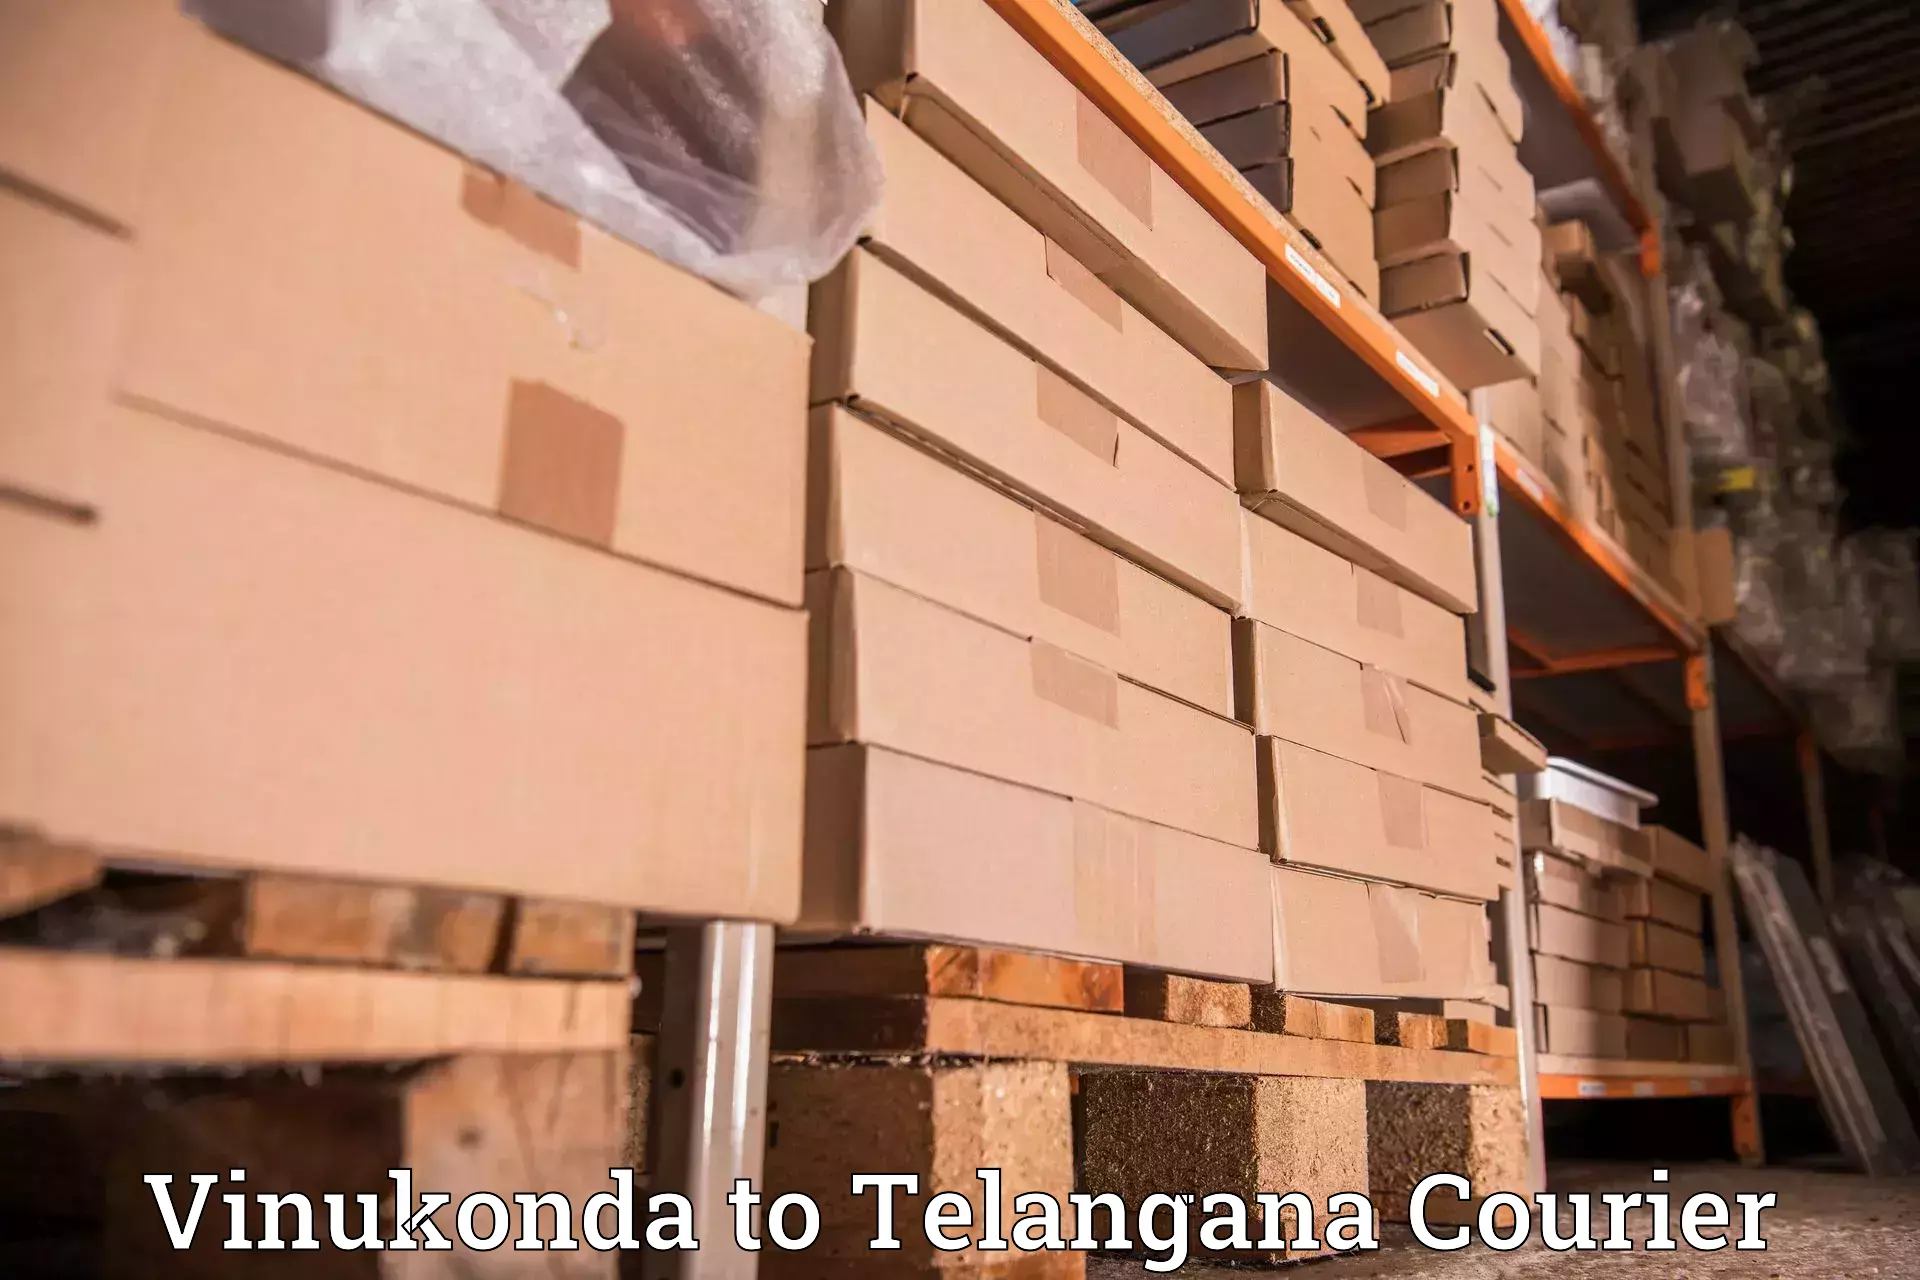 Global delivery options Vinukonda to Shamshabad